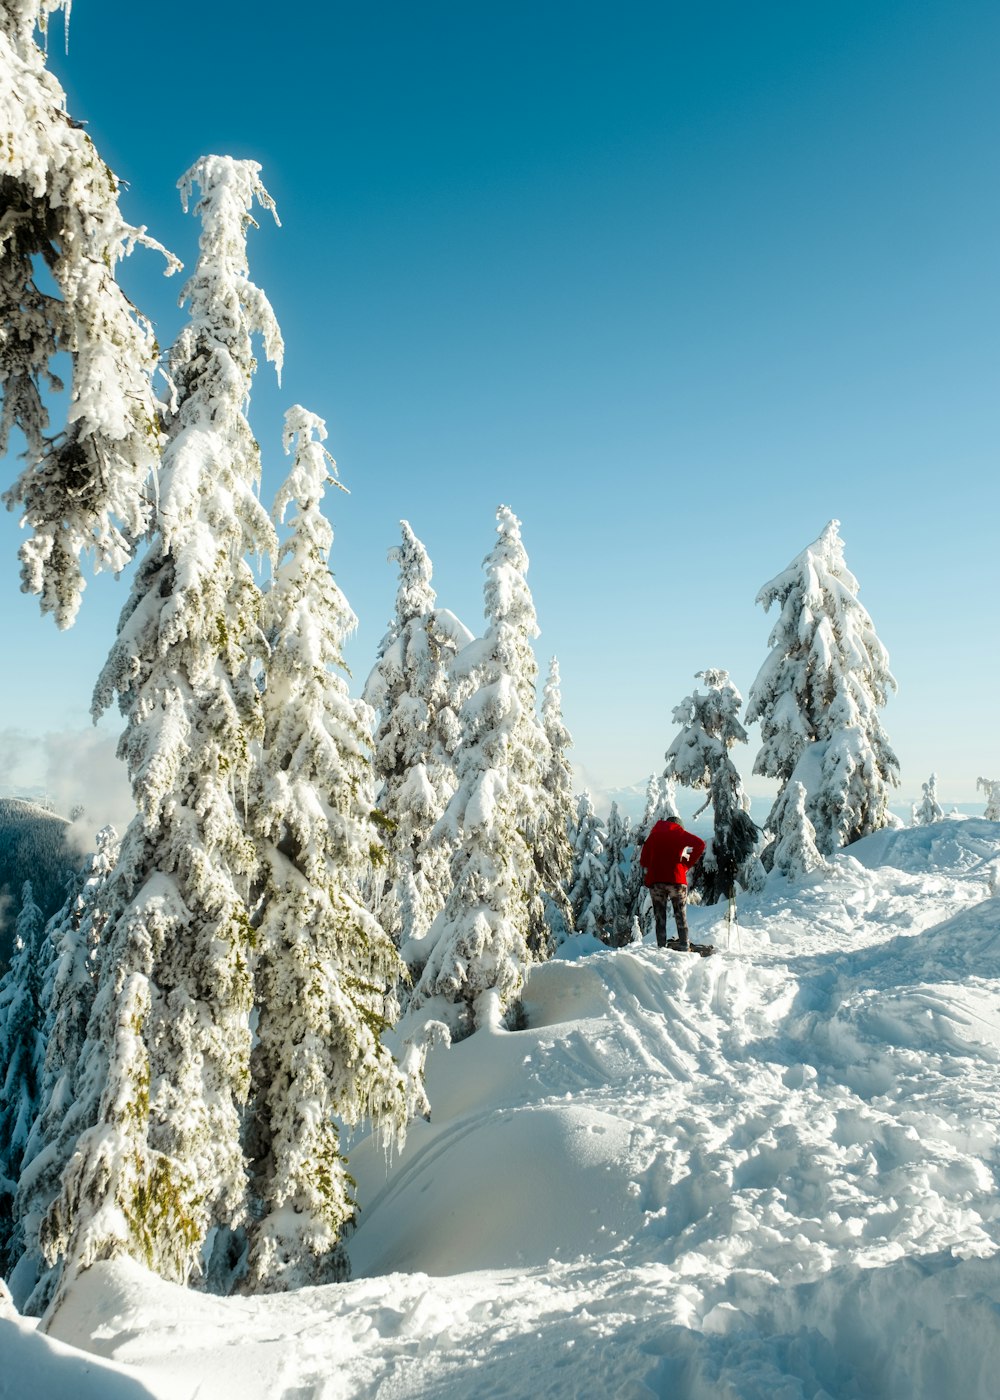 Un homme dévalant une pente enneigée à skis